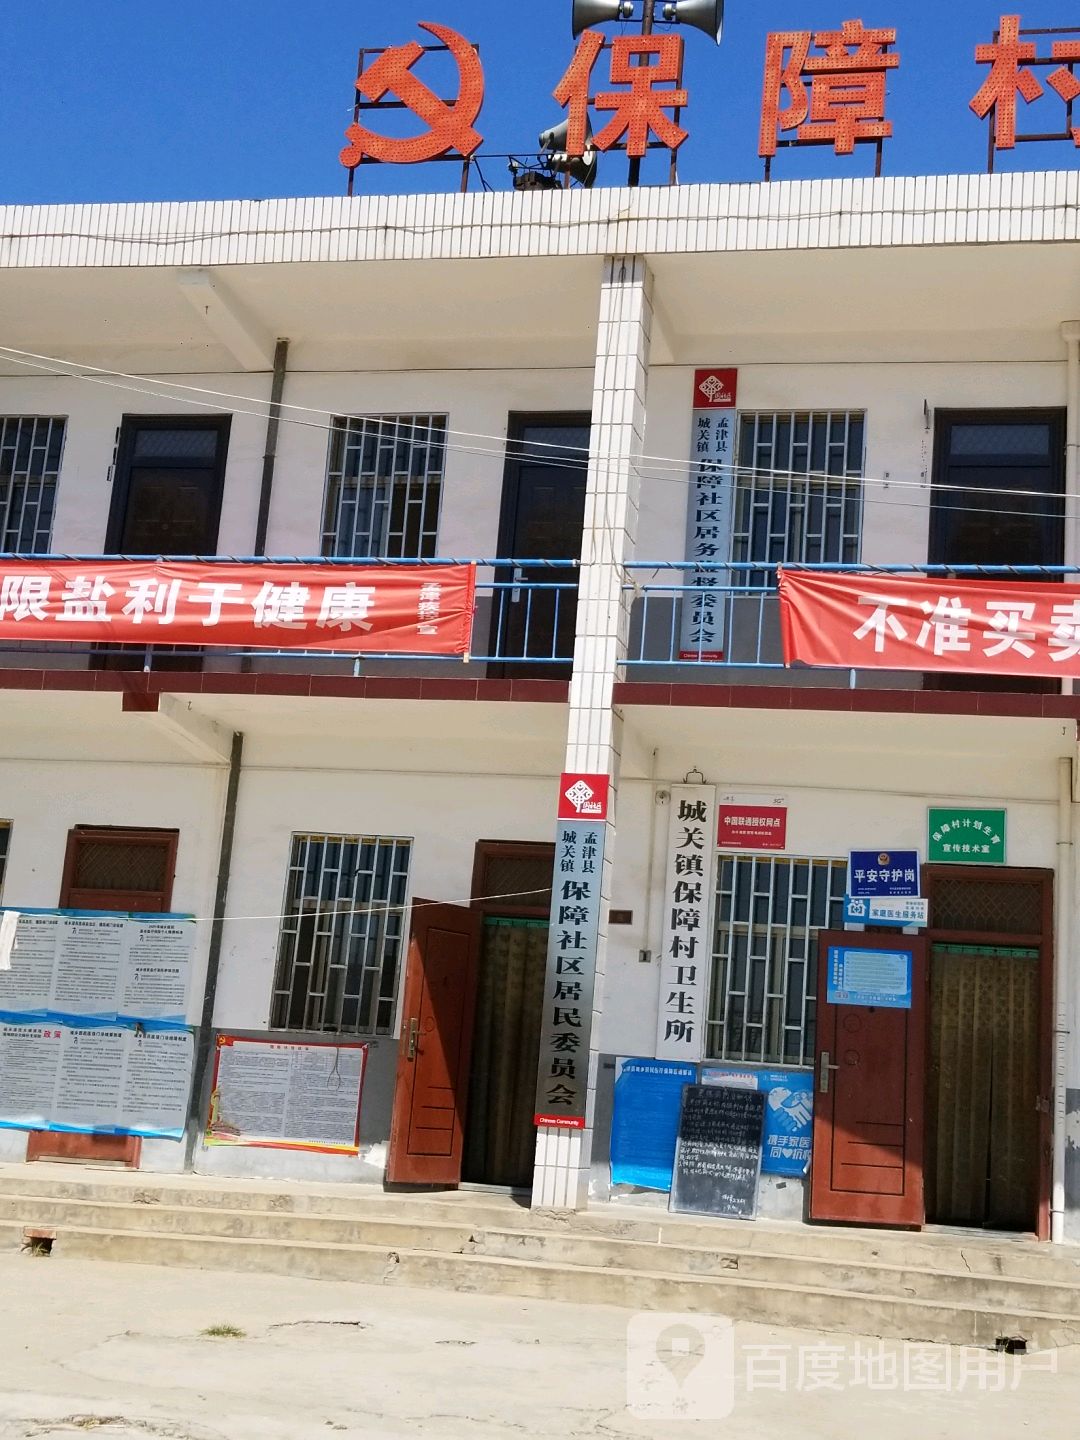 洛阳市孟津区王常线城关镇保障小学东北侧约60米